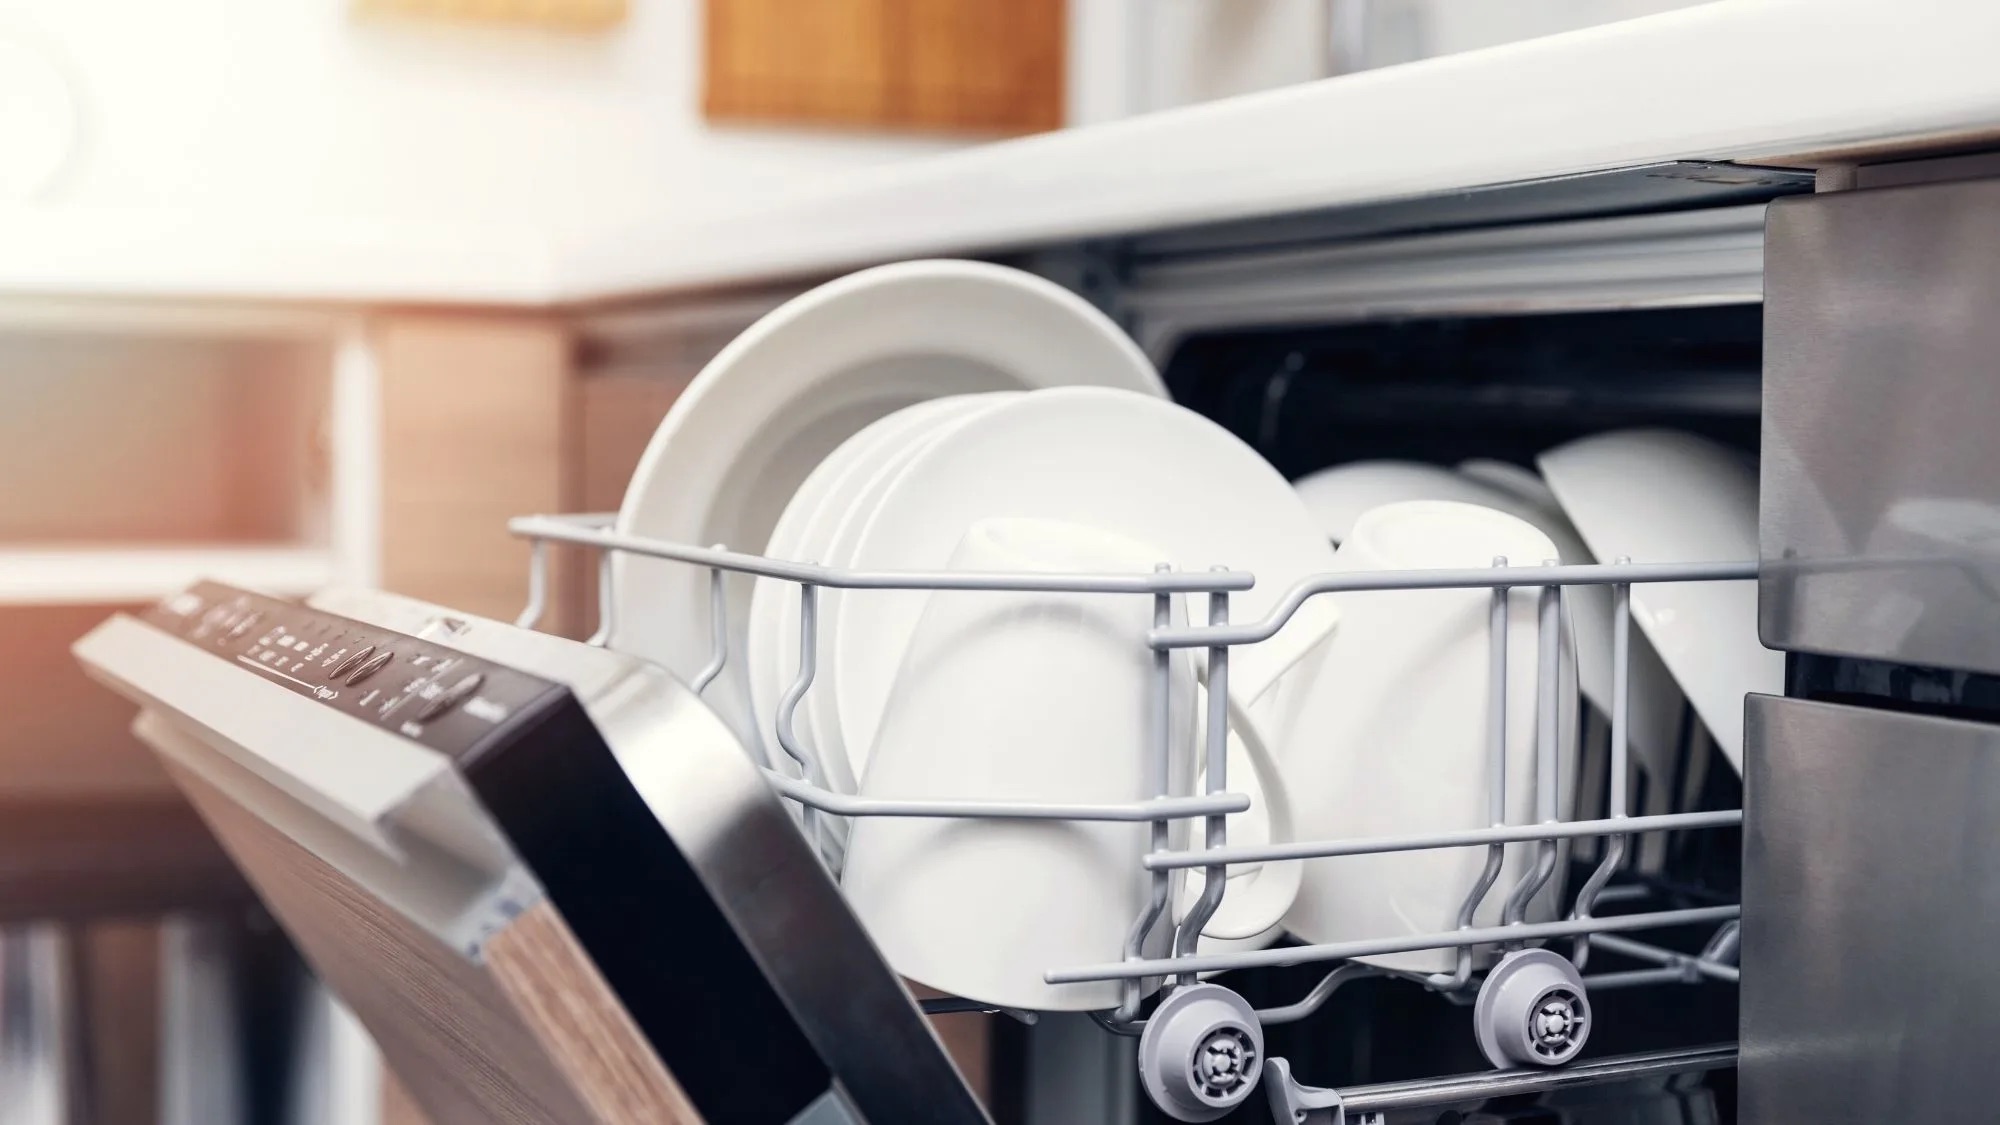 6 Best Rv Dishwasher for 2023